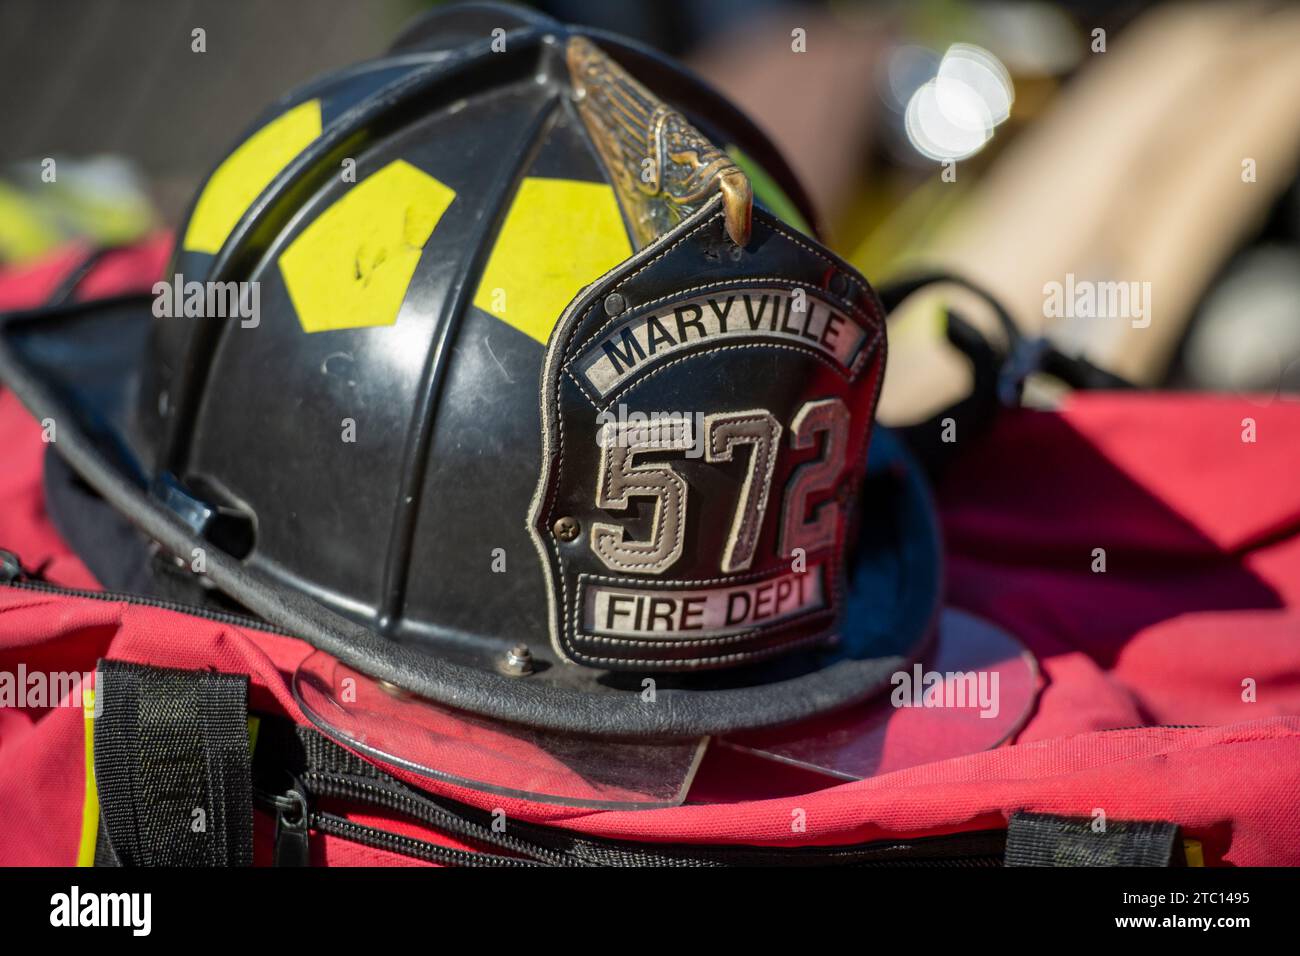 A fire helmet atop a firefighter's gear bag. Stock Photo